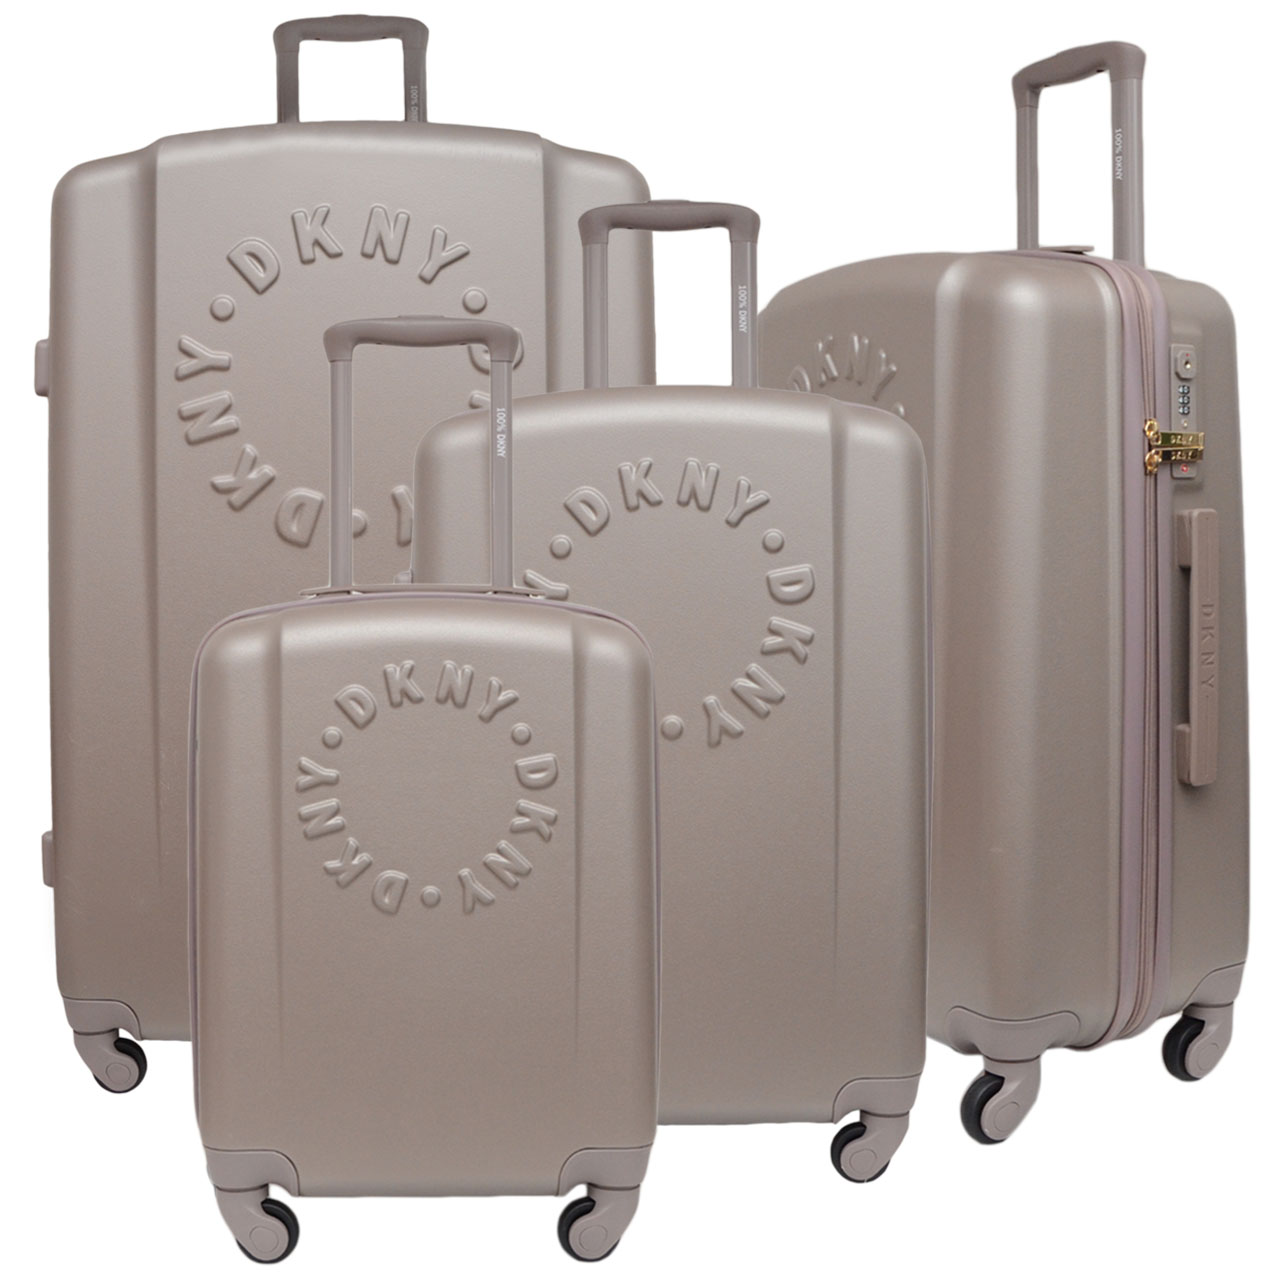 نکته خرید - قیمت روز مجموعه چهار عددی چمدان دی کی ان وای مدل INTL PROMO PR1 خرید